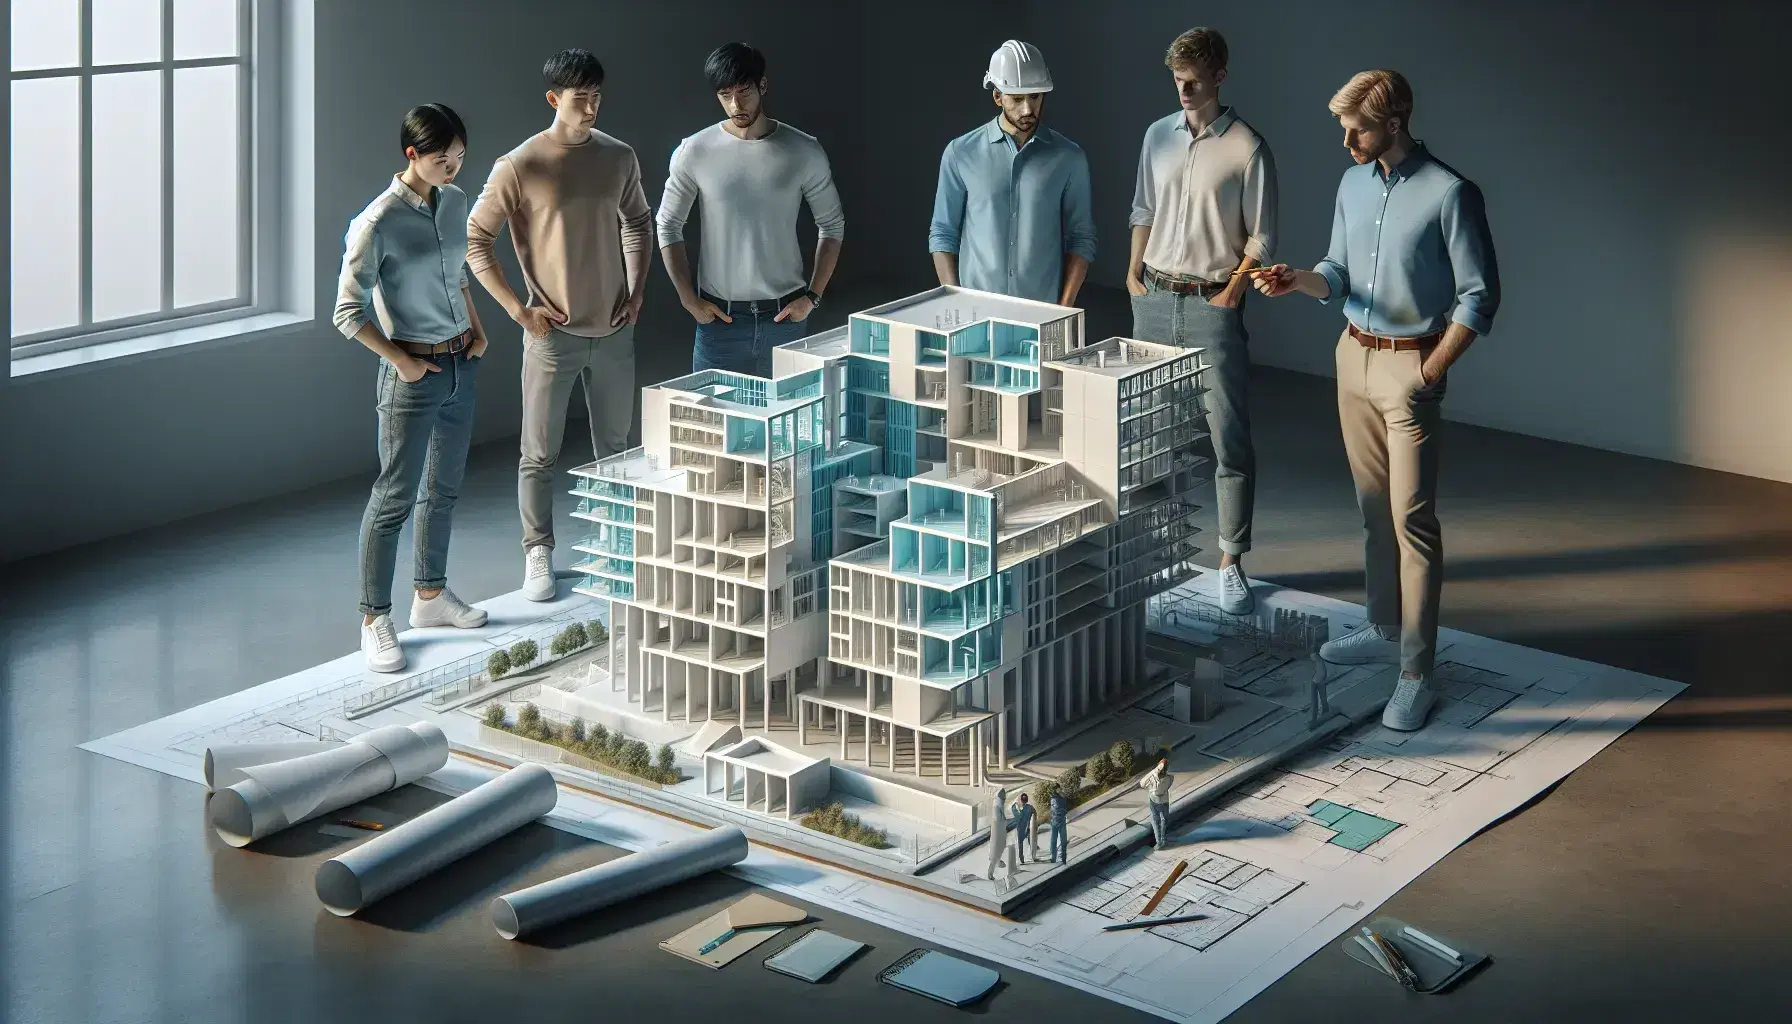 Grupo de cinco profesionales de la construcción analizando un modelo arquitectónico detallado en una mesa de trabajo con cascos de seguridad, laptop y planos.